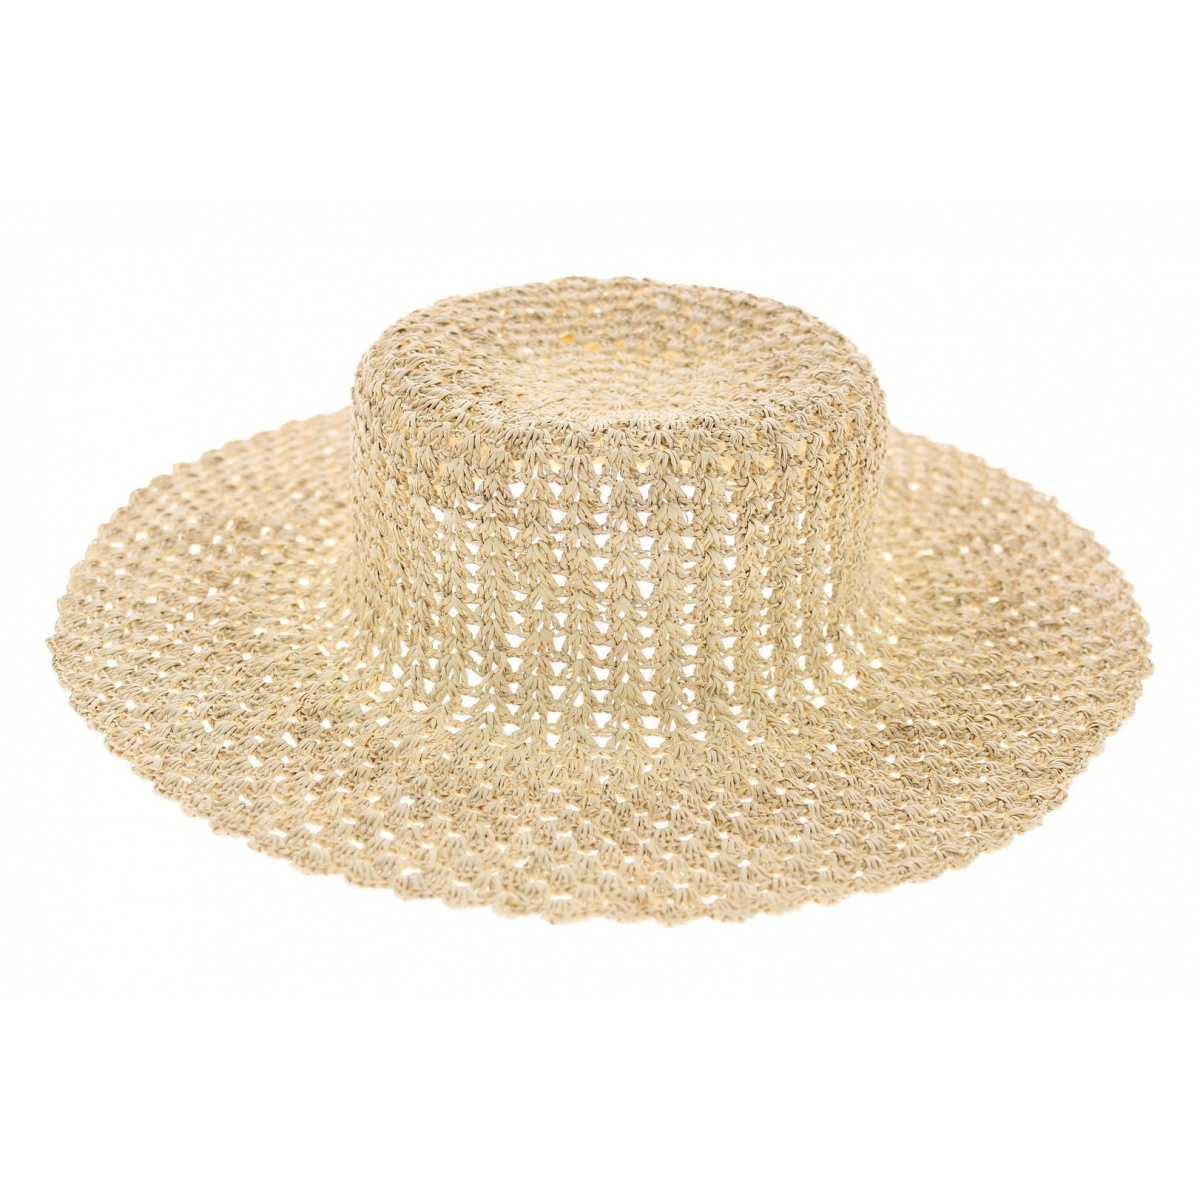 Chapeaux pour femme : casquette, panama, bob et bonnet